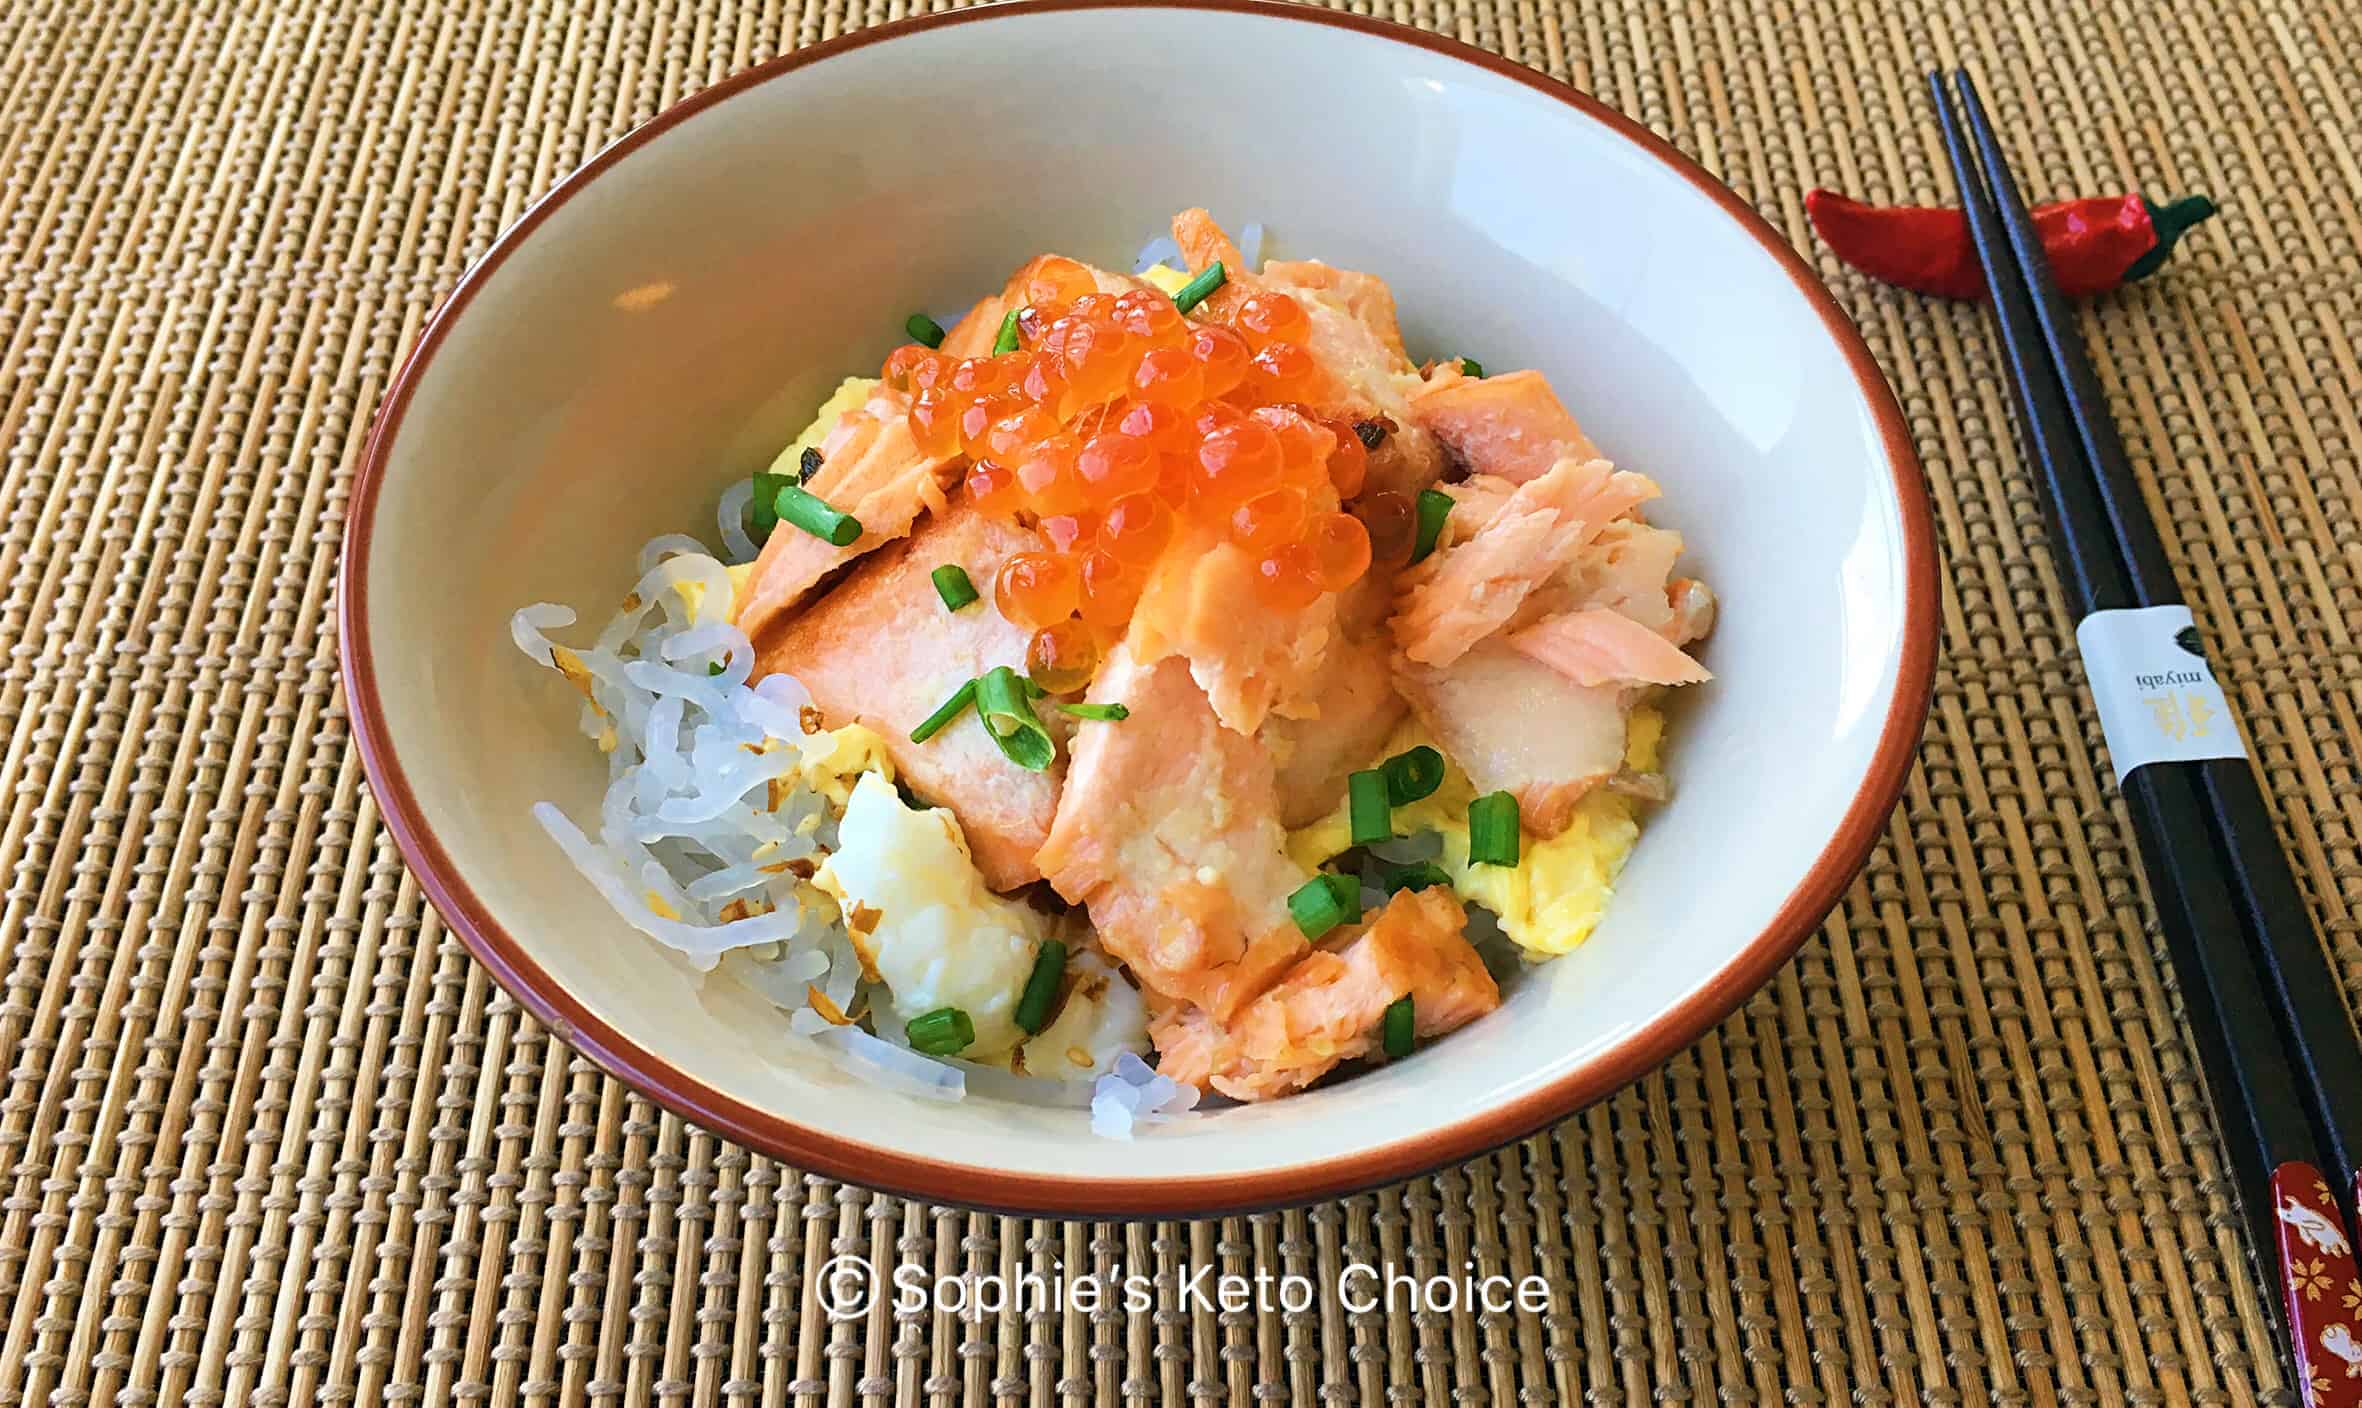 鮭魚親子蒟蒻丼salmon Ikura Don 鮭いくら丼 健康低卡高纖日式料理 Sophie S Keto Choice